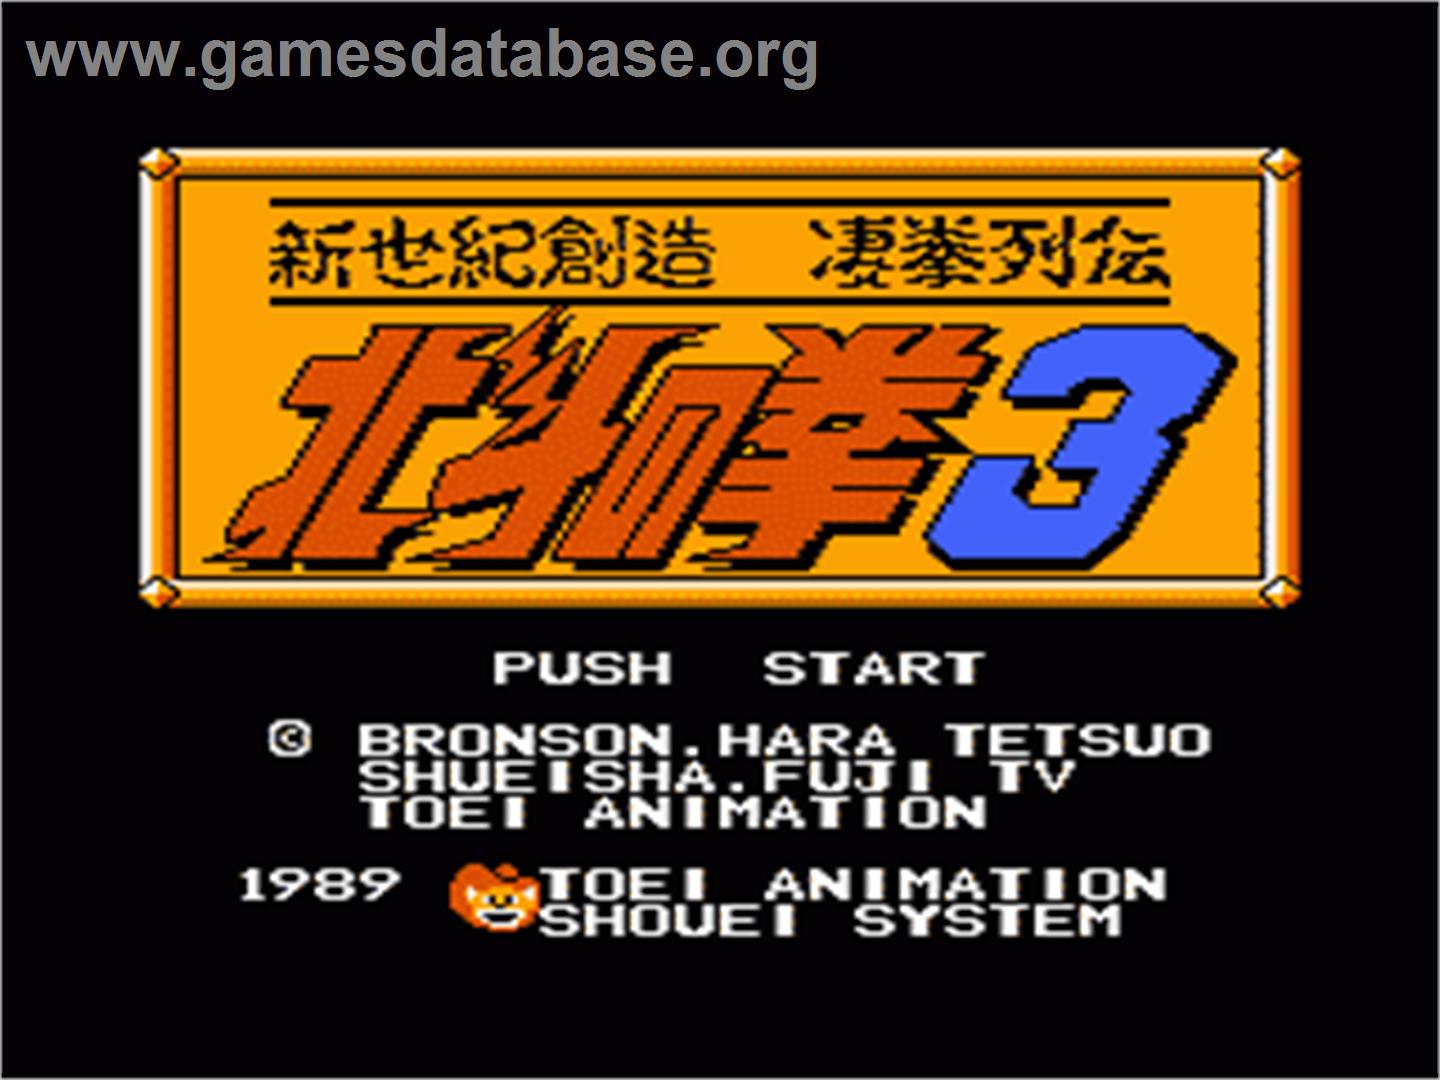 Hokuto no Ken 3: Shinseiki Souzou Seiken Retsuden - Nintendo NES - Artwork - Title Screen